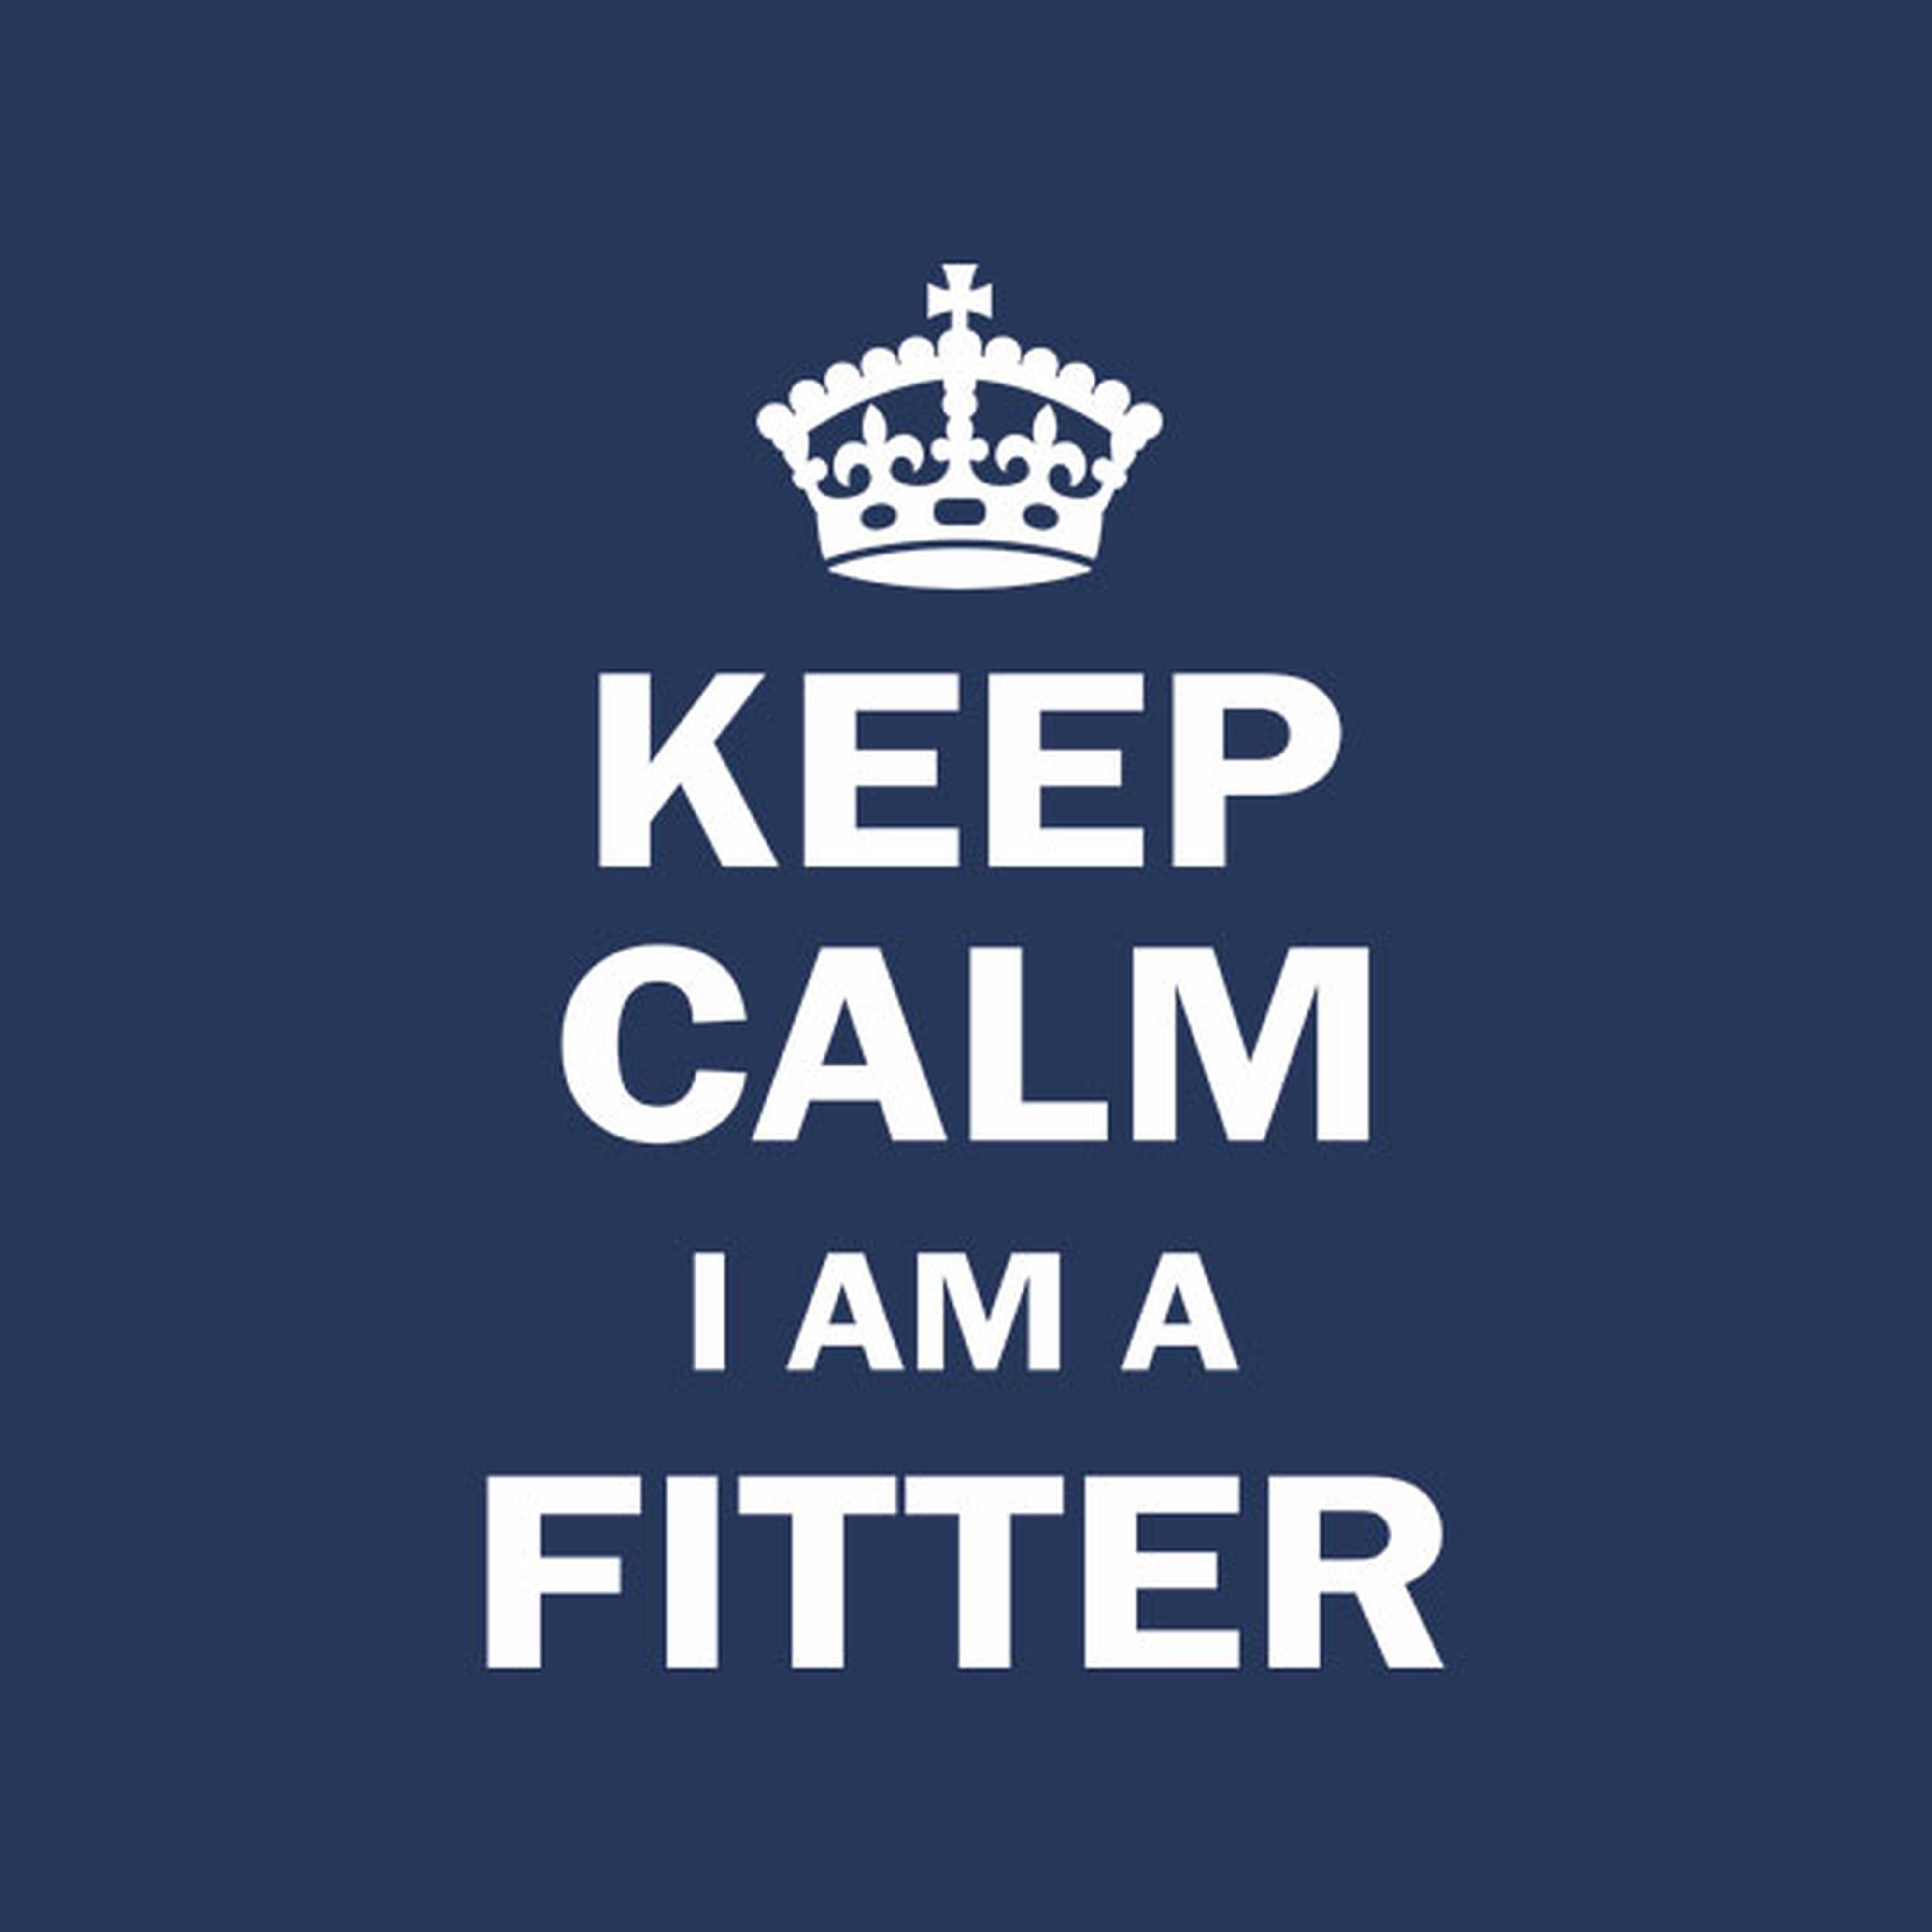 Keep calm. I am a fitter. - T-shirt